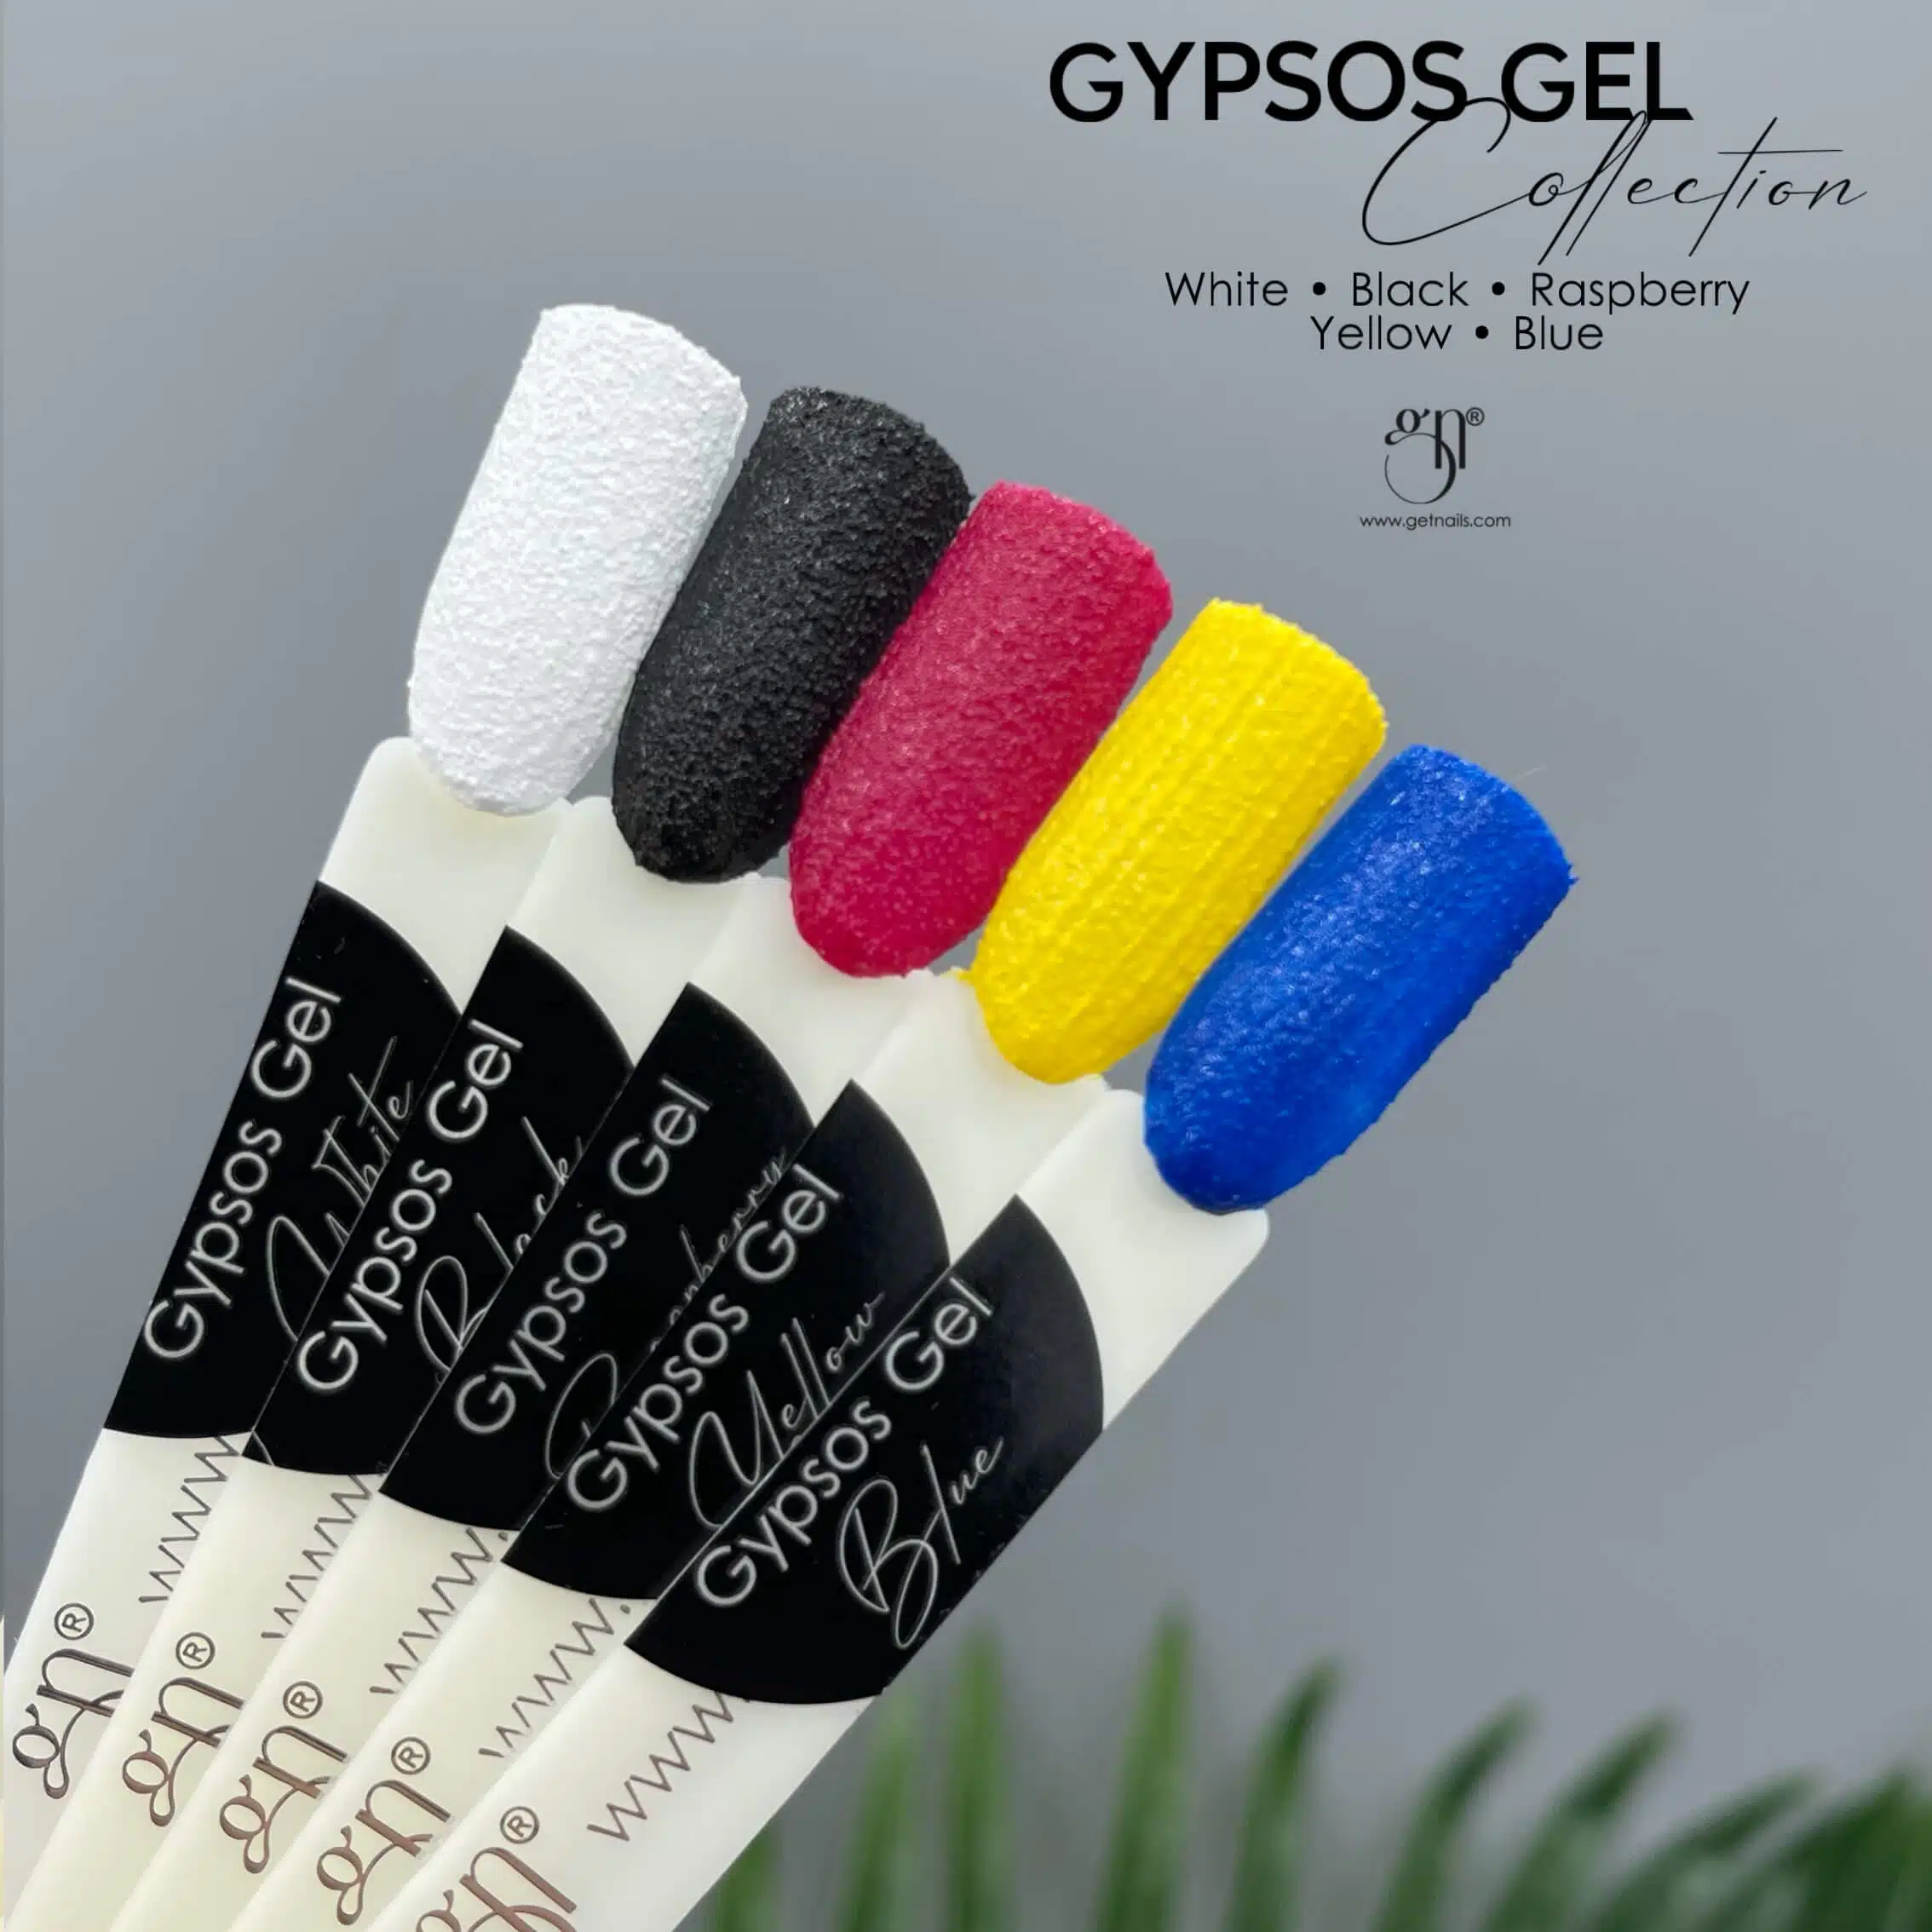 Gypsos White, Black, Raspberry, Yellow, Blue